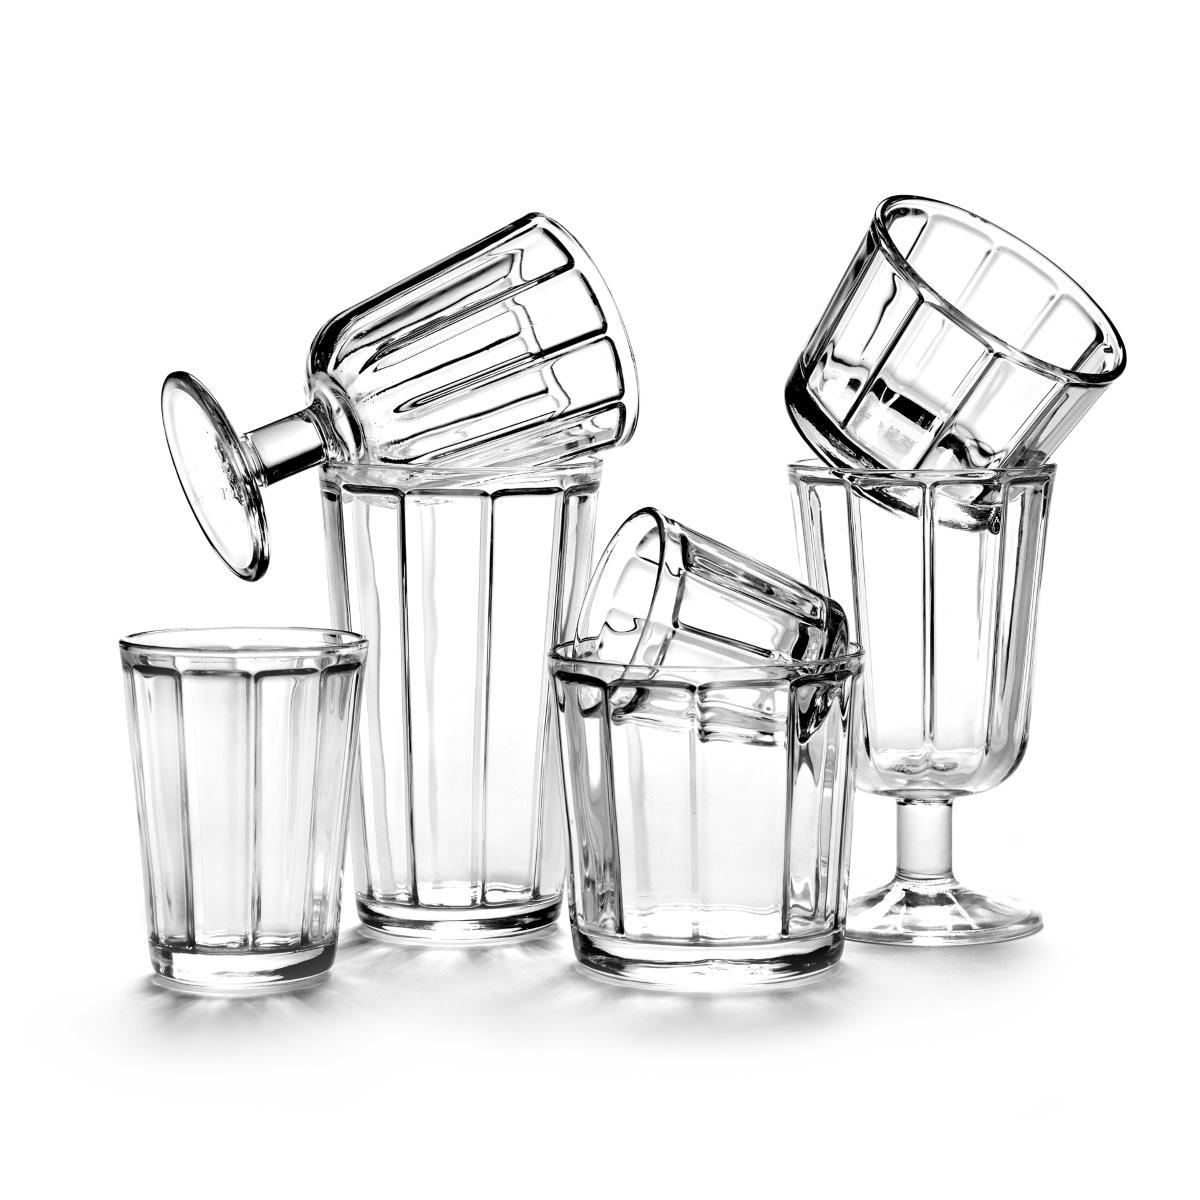 colección SURFACE by Sergio Herman, de cristal potásico, líneas rectas inspiradas en el clásico tumbler. Vasos apilados aleatoriamente.